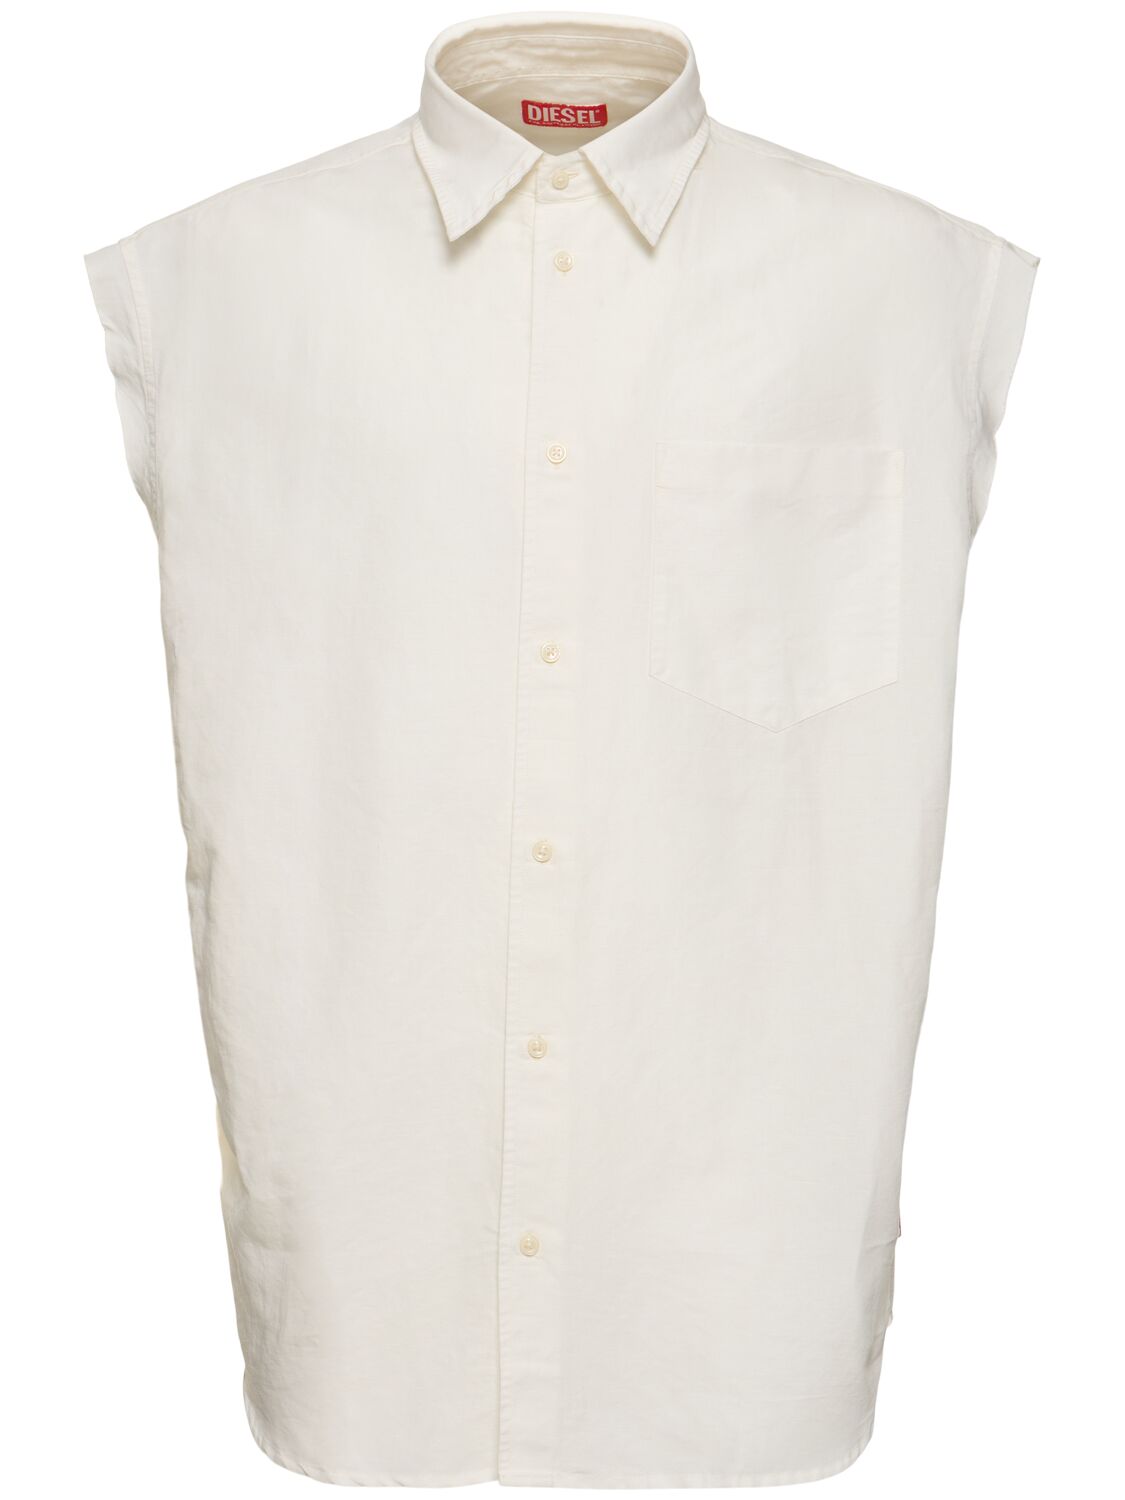 Diesel S-simens Sleeveless Cotton & Linen Shirt In White